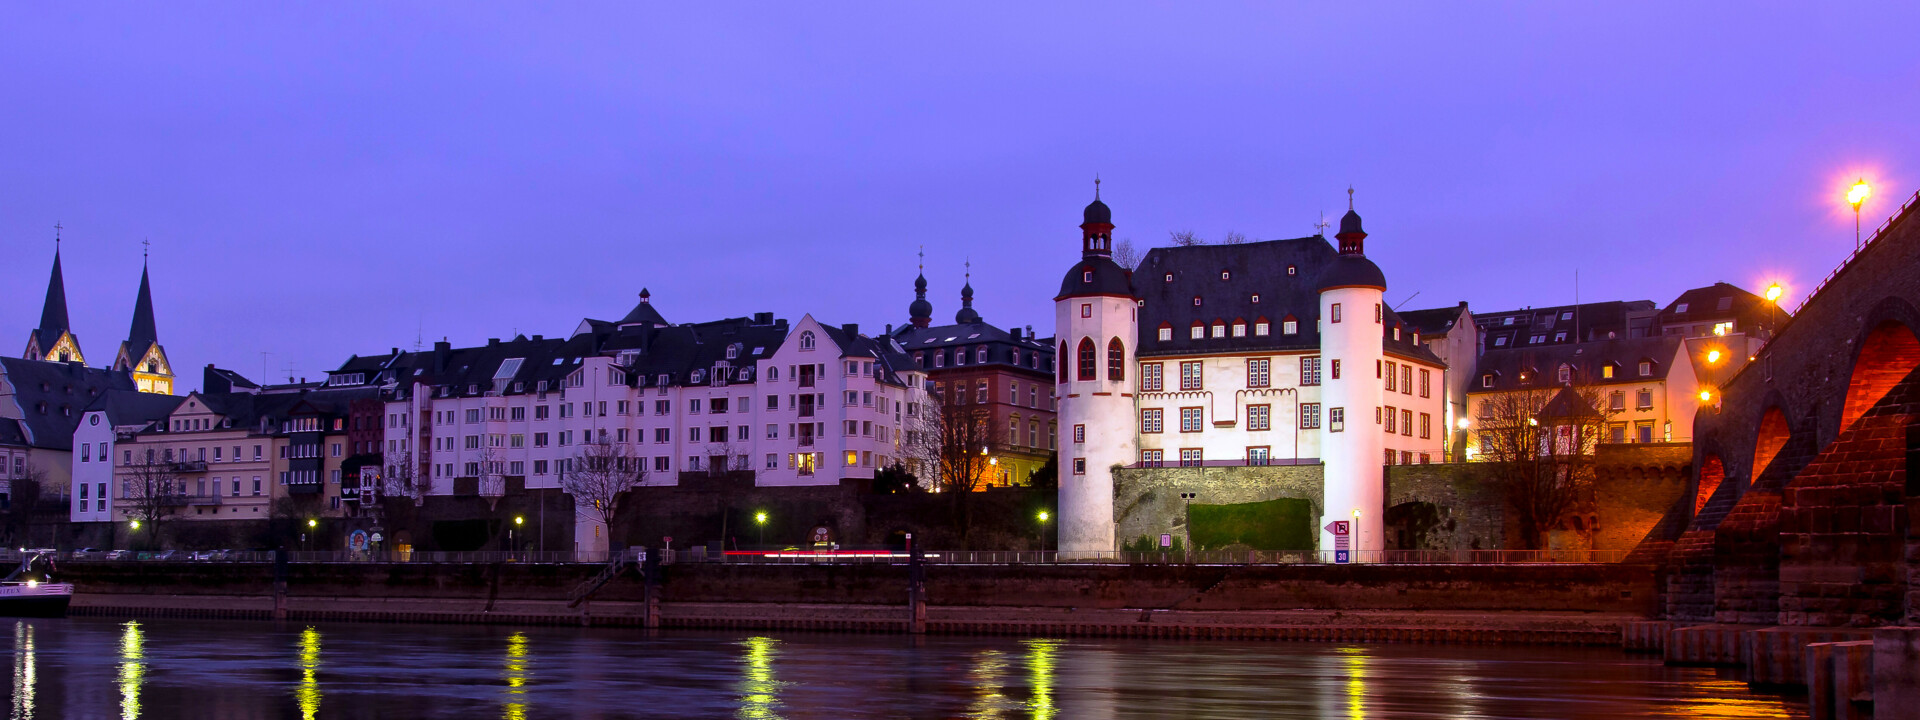 Abendfoto von der Alten Burg in Koblenz mit der Balduinbrücke und mit der Mosel im Vordergrund ©Koblenz-Touristik GmbH, Christian Nentwig